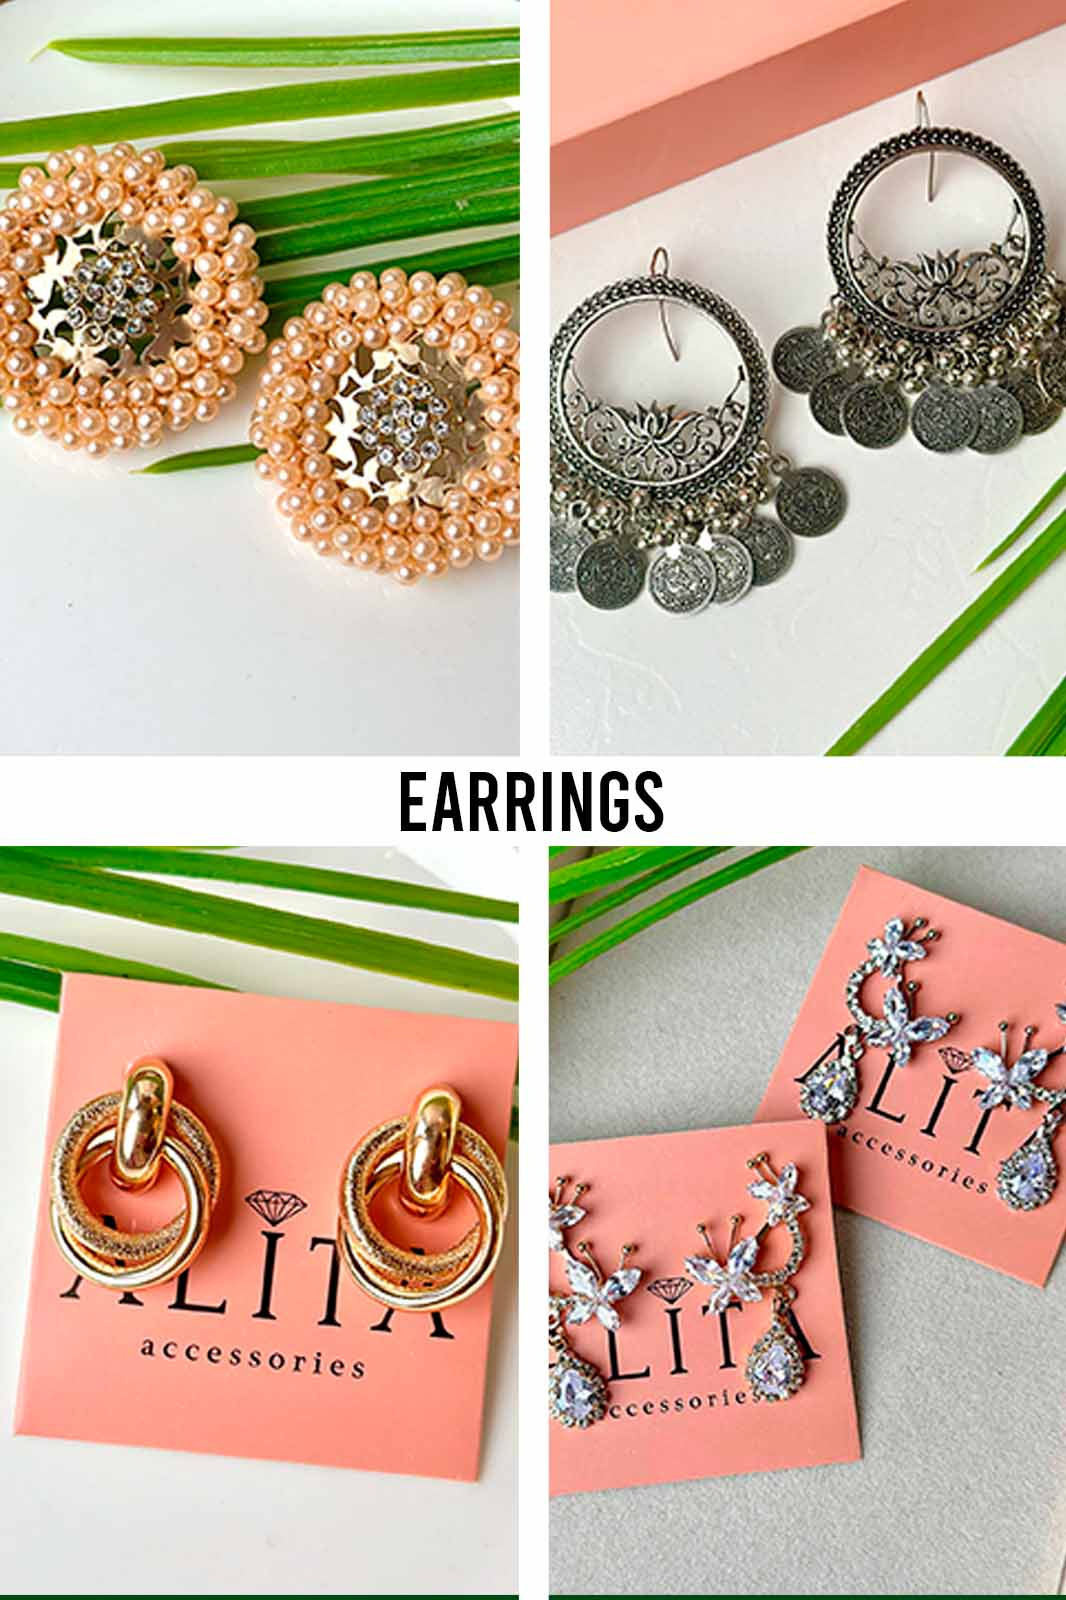 Earrings - Alita Accessories